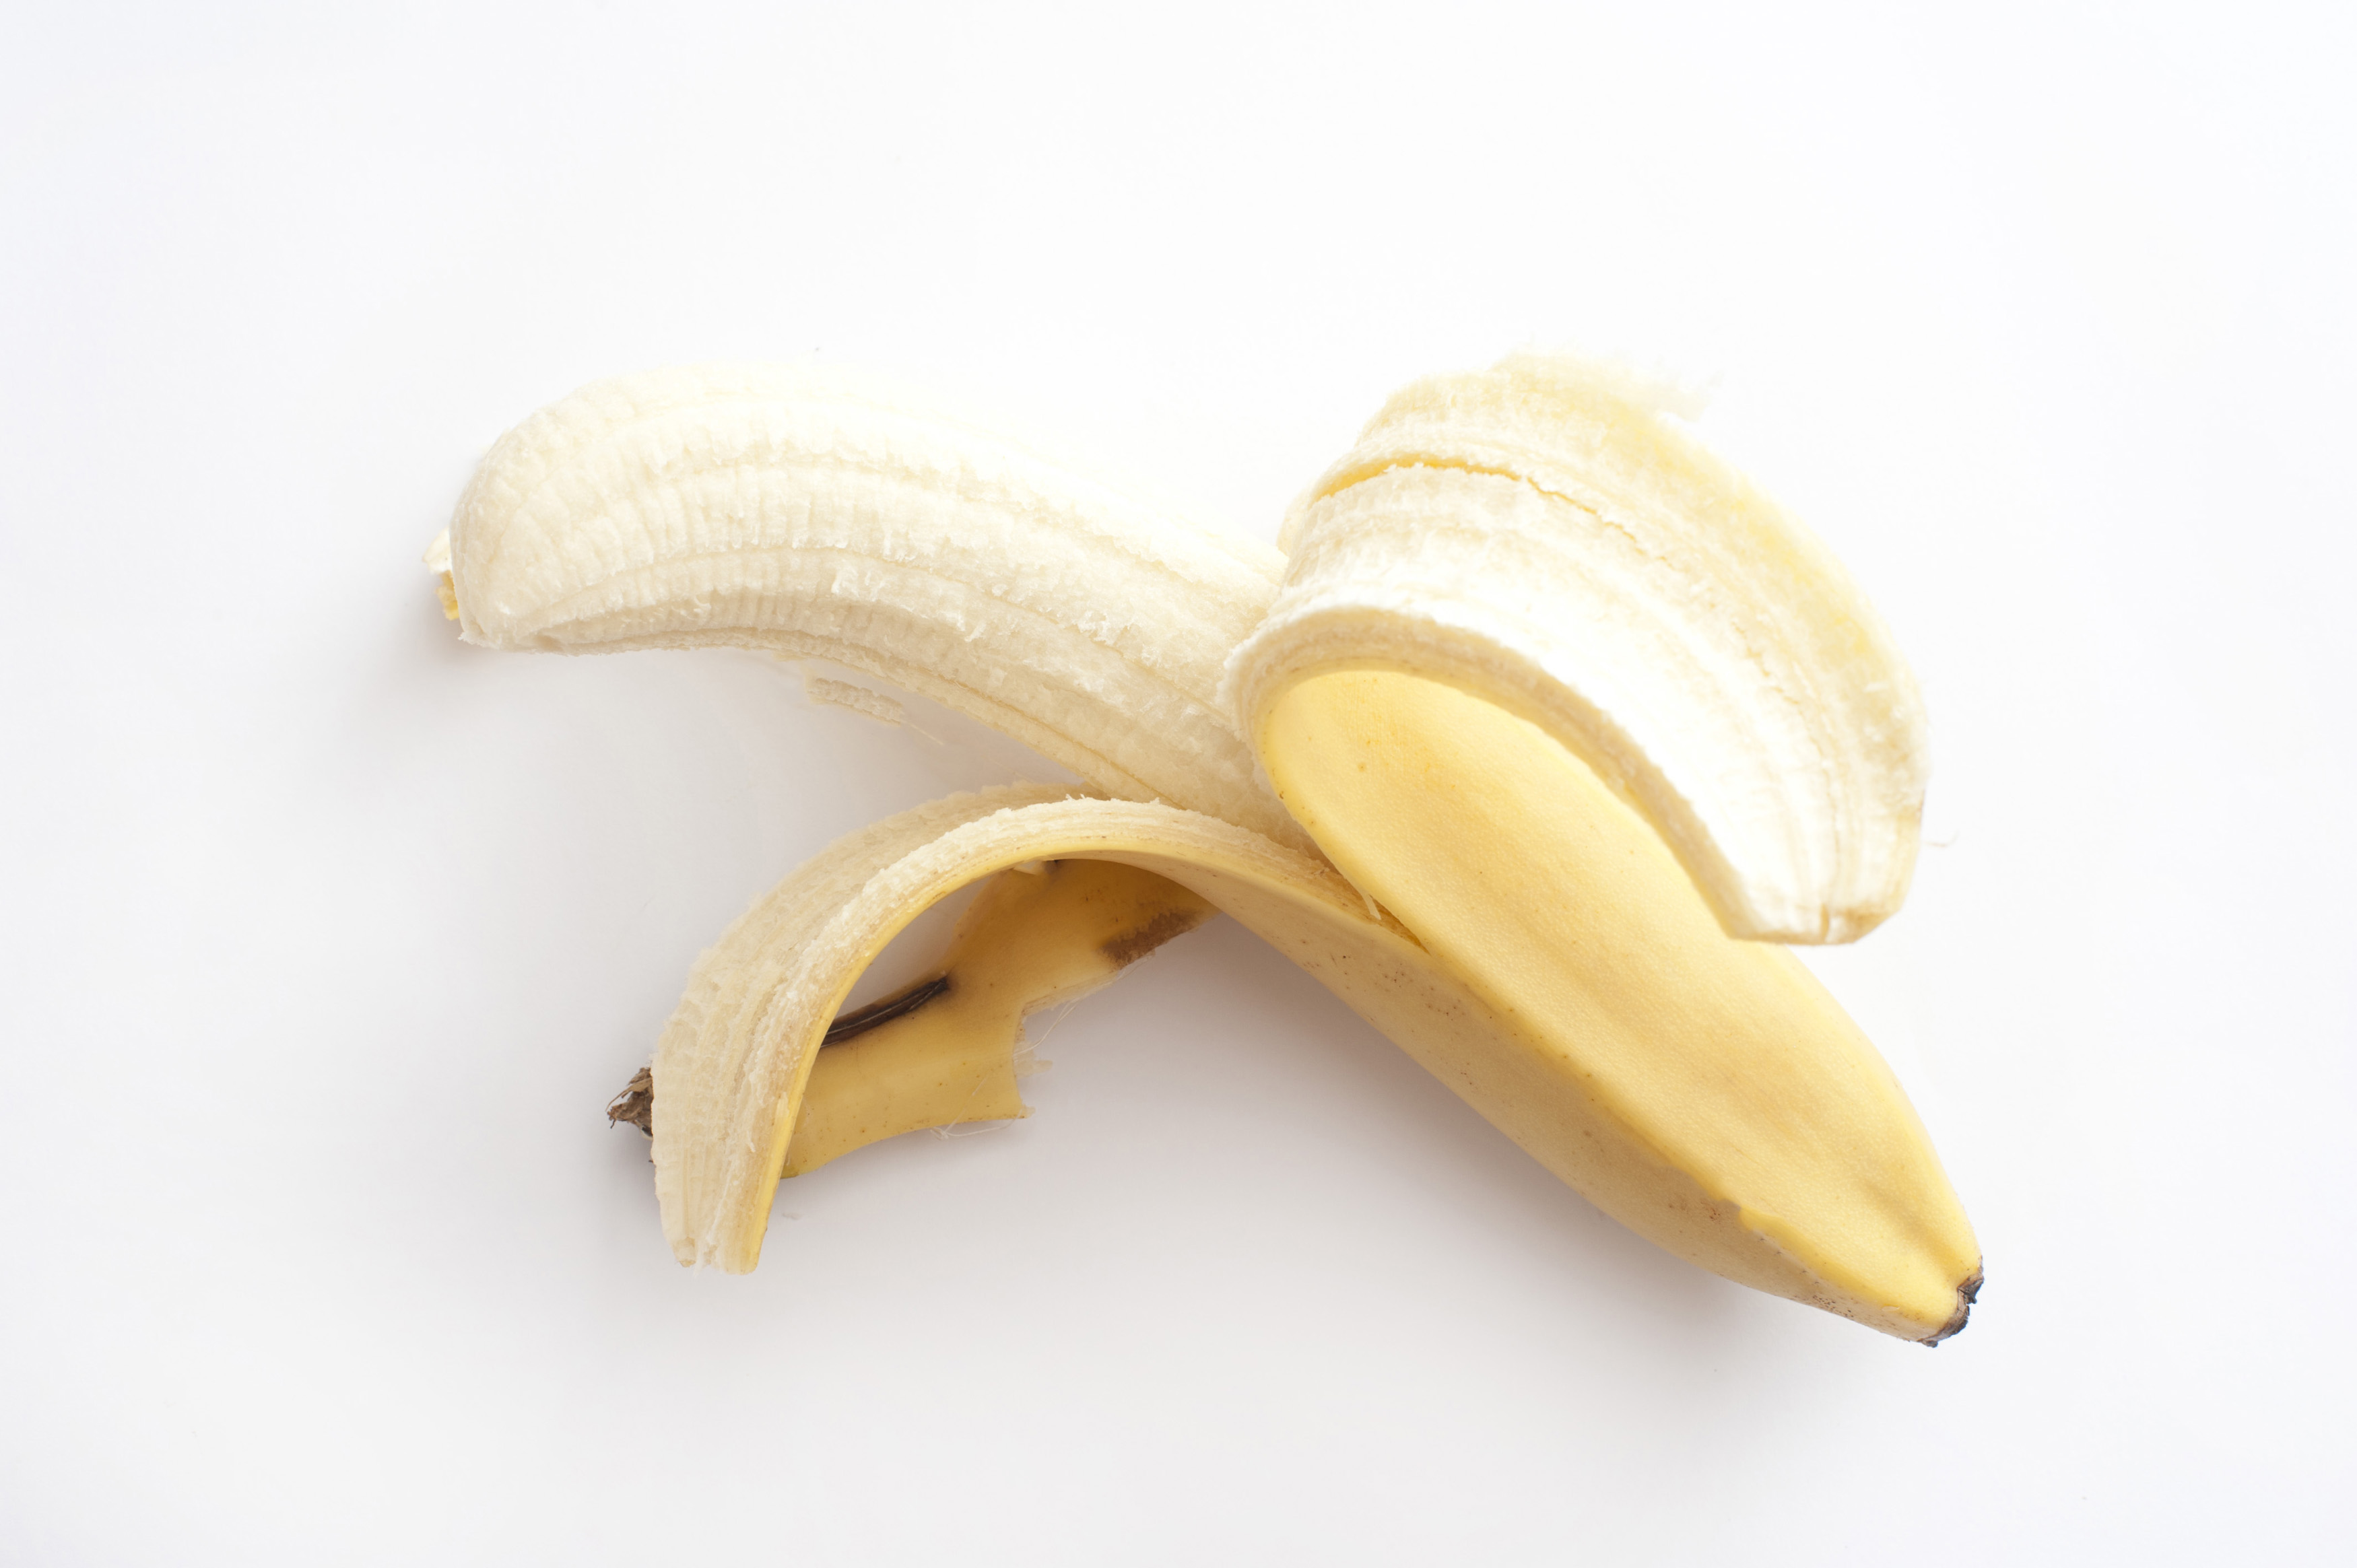 Peeled banana on white background - Free Stock Image